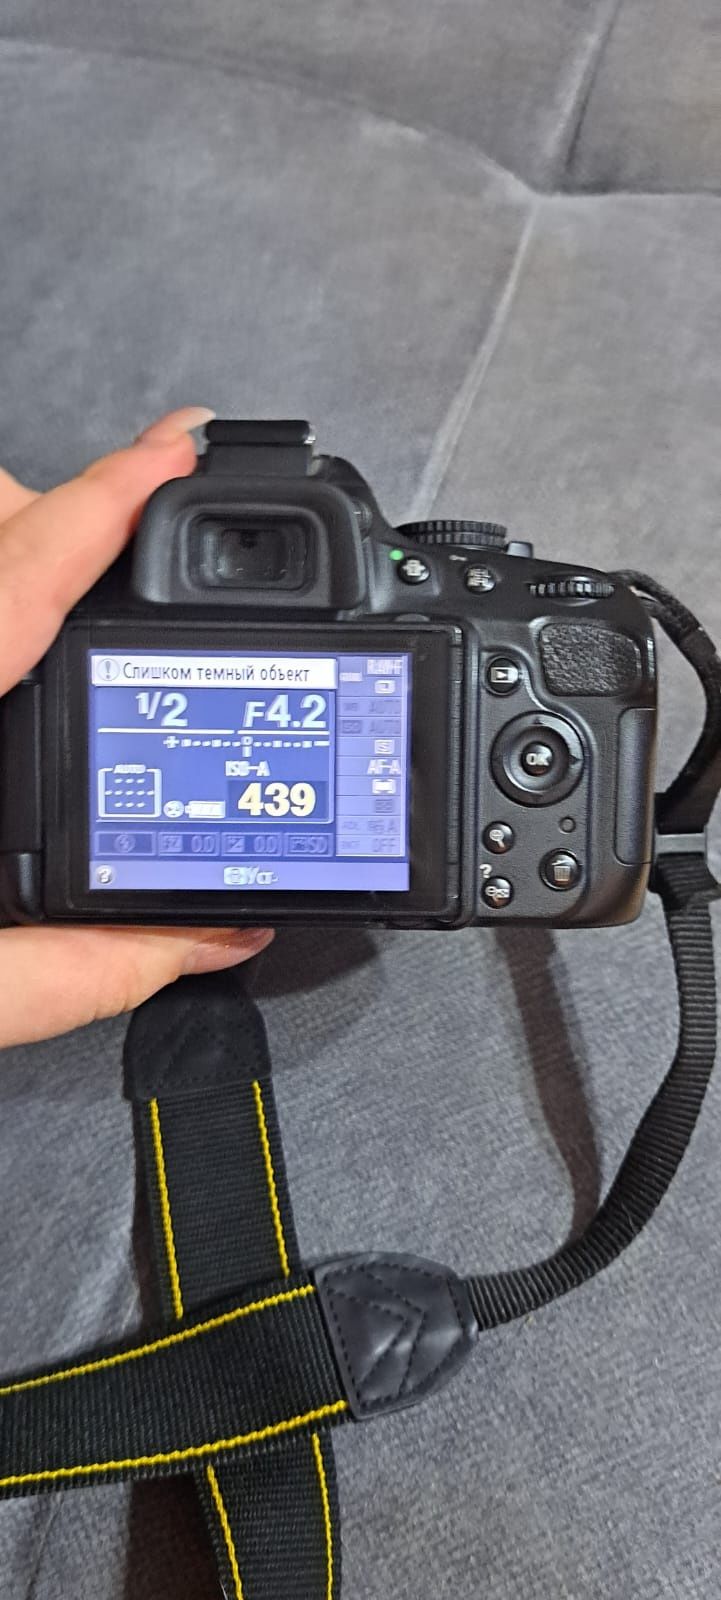 Продам фотоаппарат никон-д5100 в отличном состоянии полностью комплект